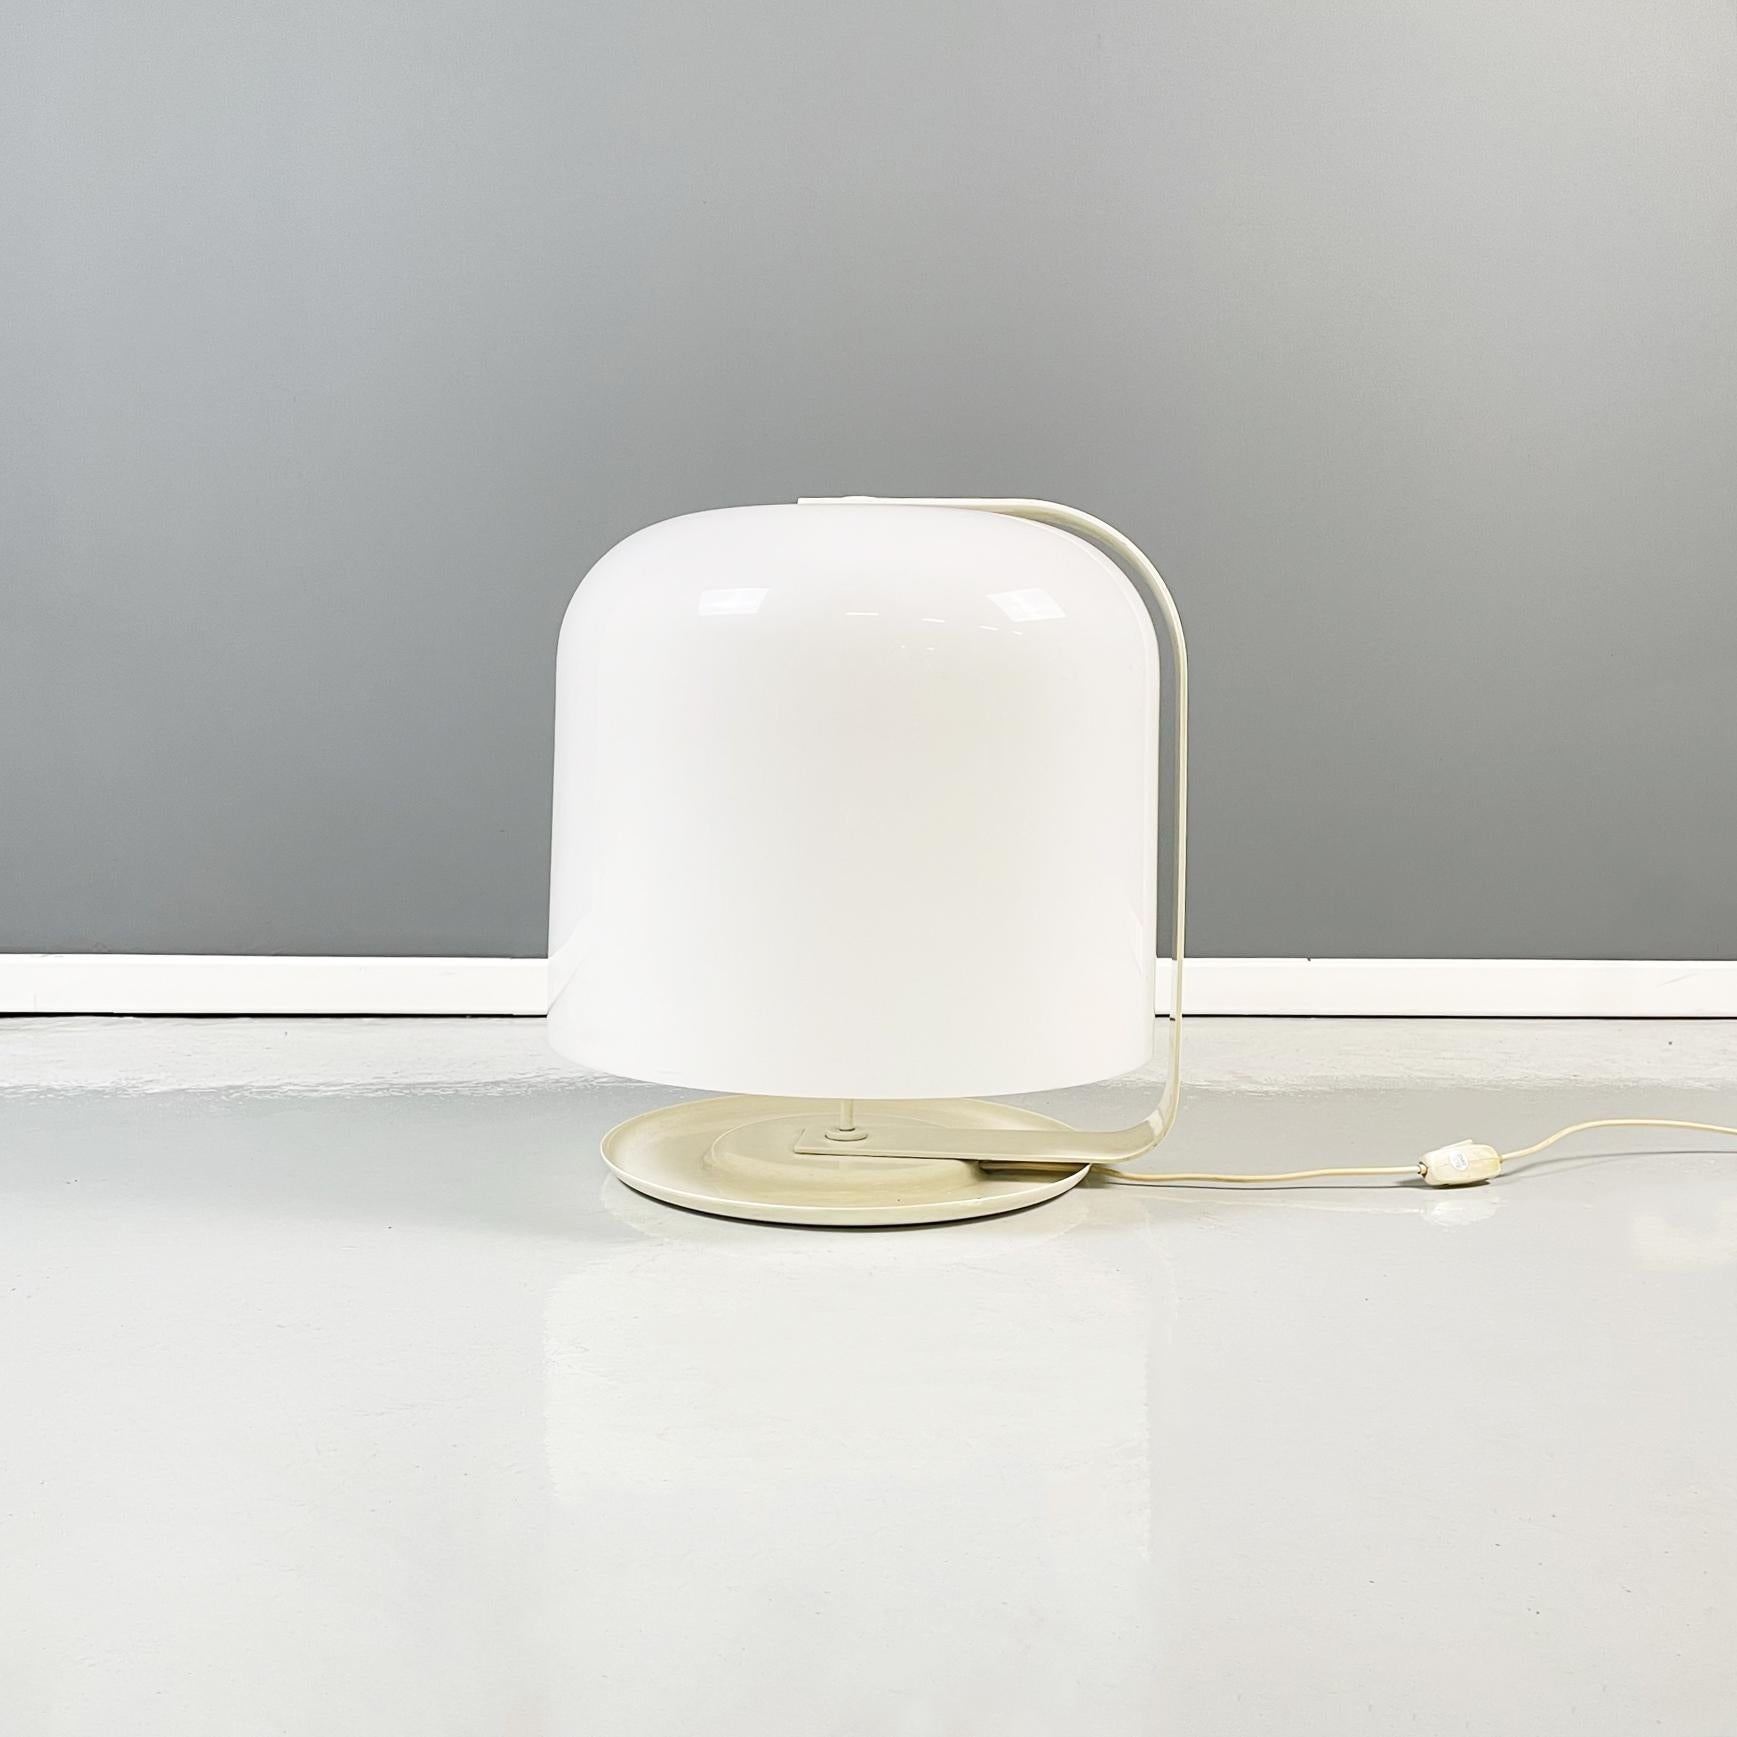 Lampe de table italienne du milieu du siècle en plastique et métal mod. Alvise de Luigi Massoni pour Guzzini, années 1960
Lampe de table mod. Alvise avec base ronde en métal peint blanc-beige. L'abat-jour, cylindrique aux coins arrondis en